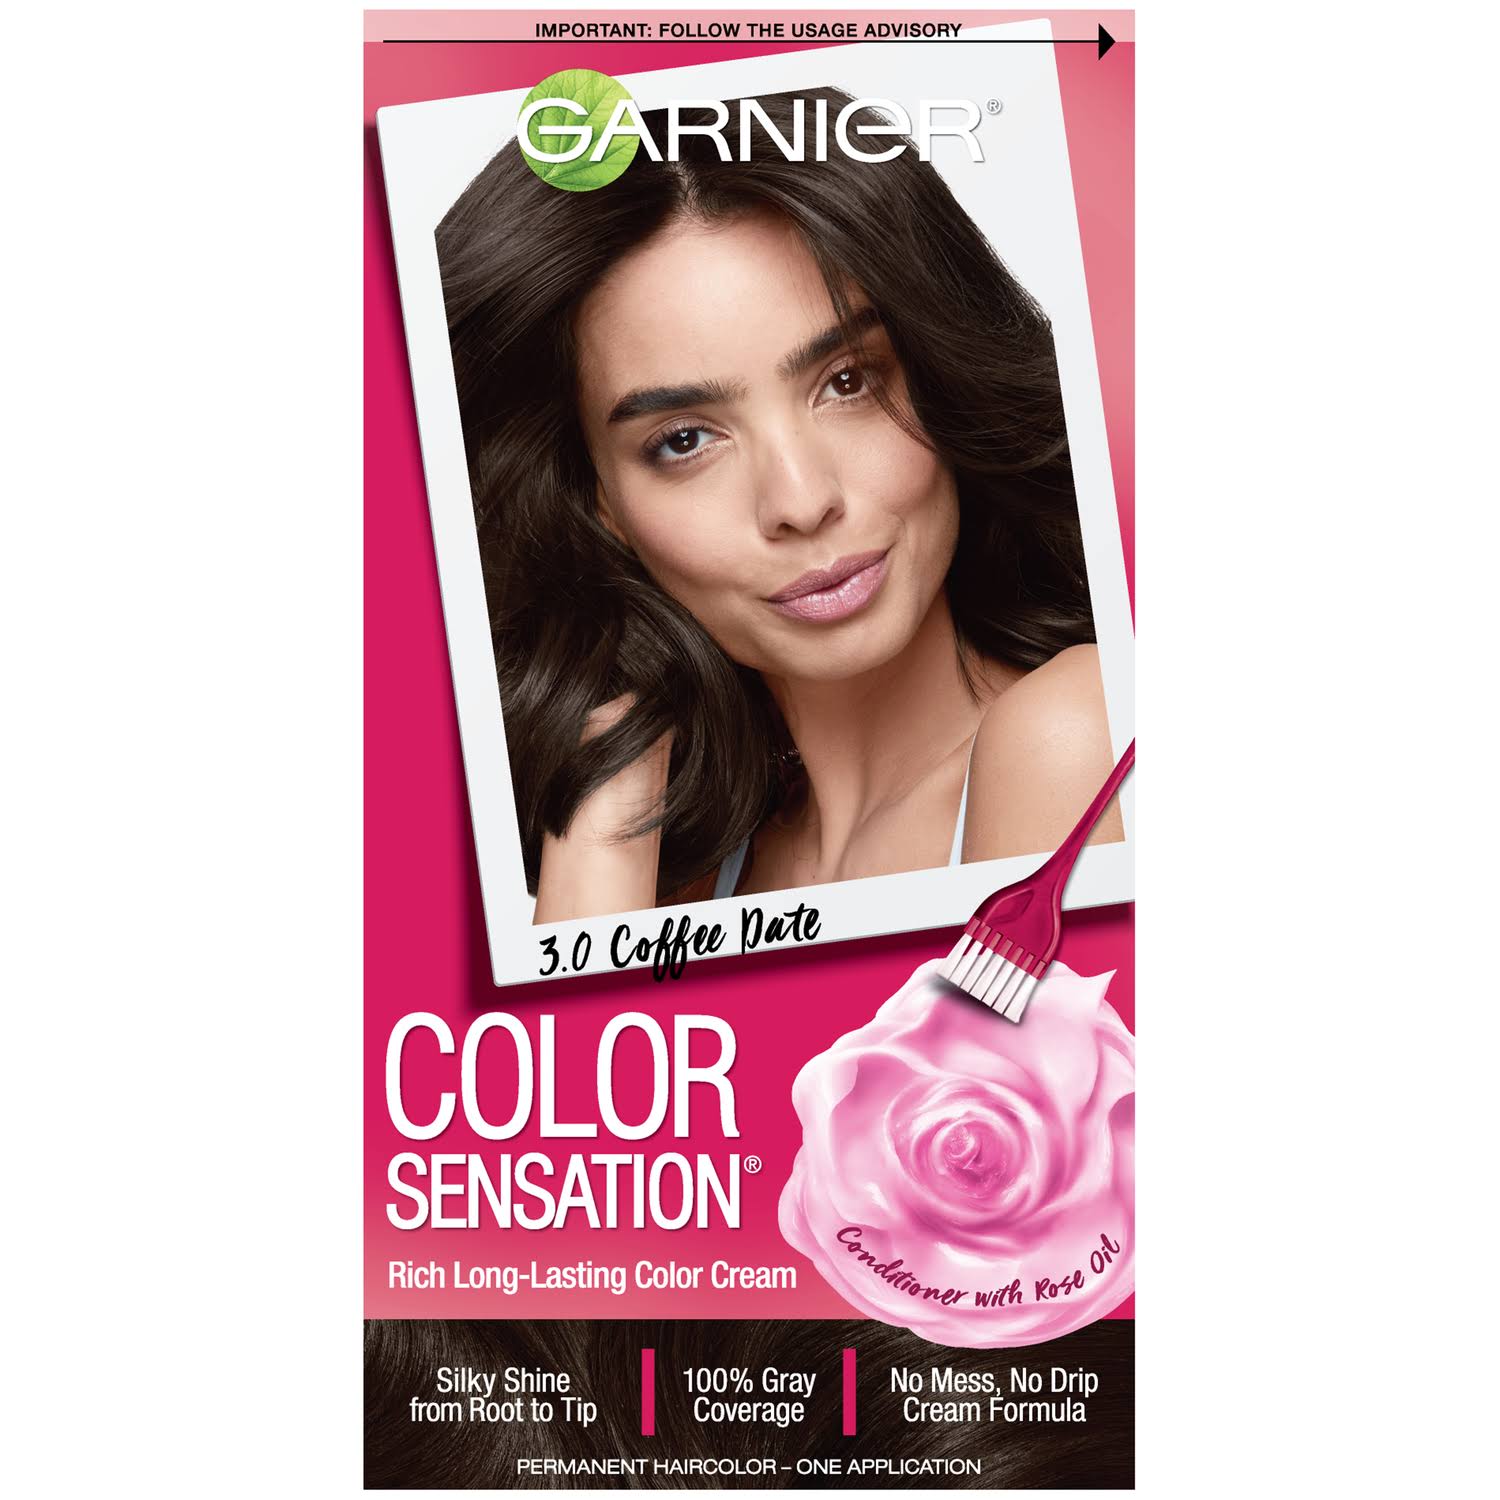 Garnier Hair Color Sensation Rich Long-Lasting Color Cream, 3.0 Darkest Brown